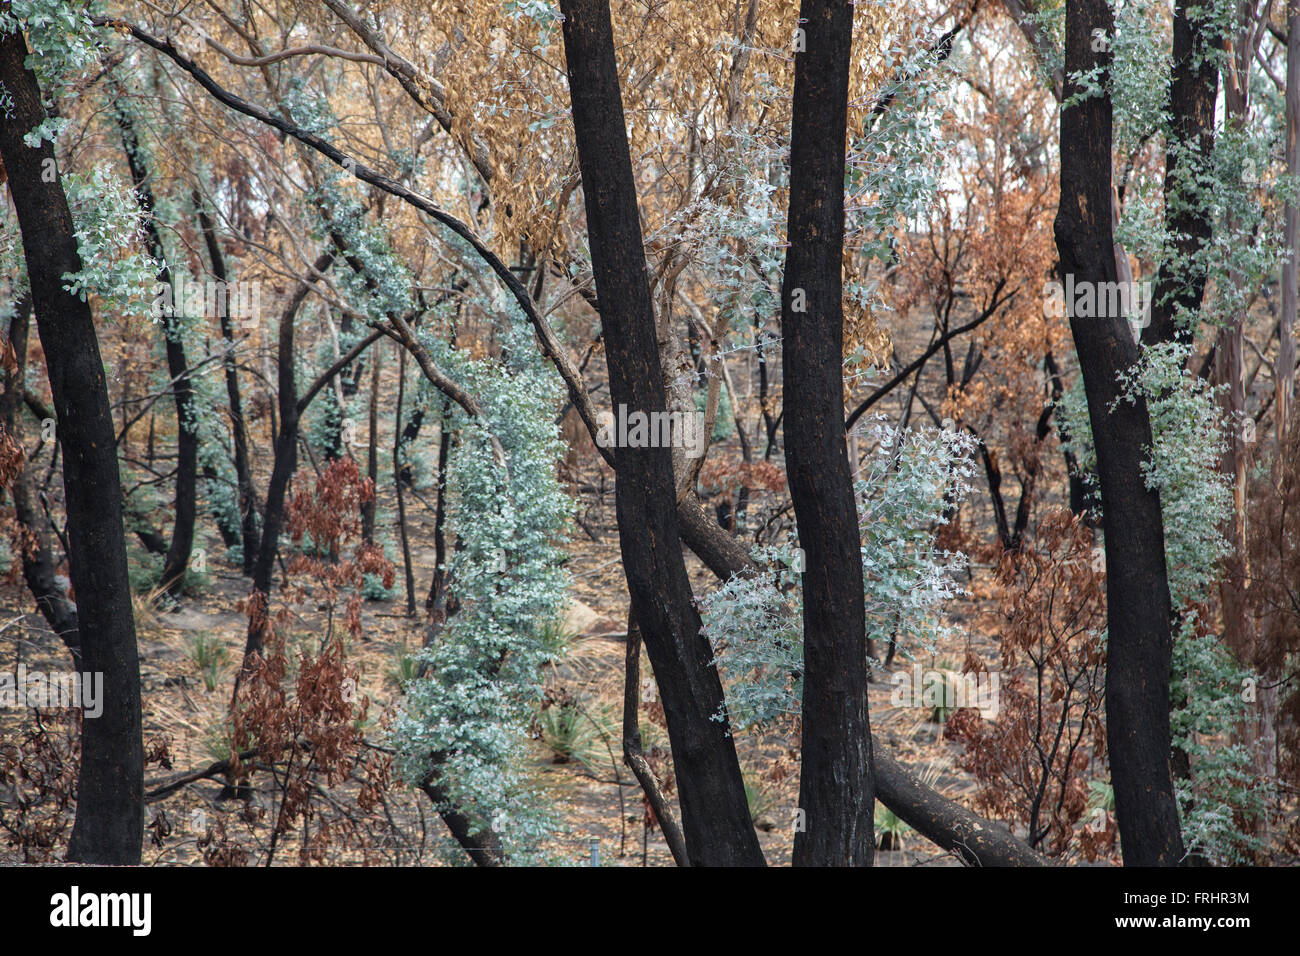 La madera de eucalipto después del incendio forestal con troncos carbonizados y follaje, pero también frescos brotes verdes, luz suave, Foto de stock